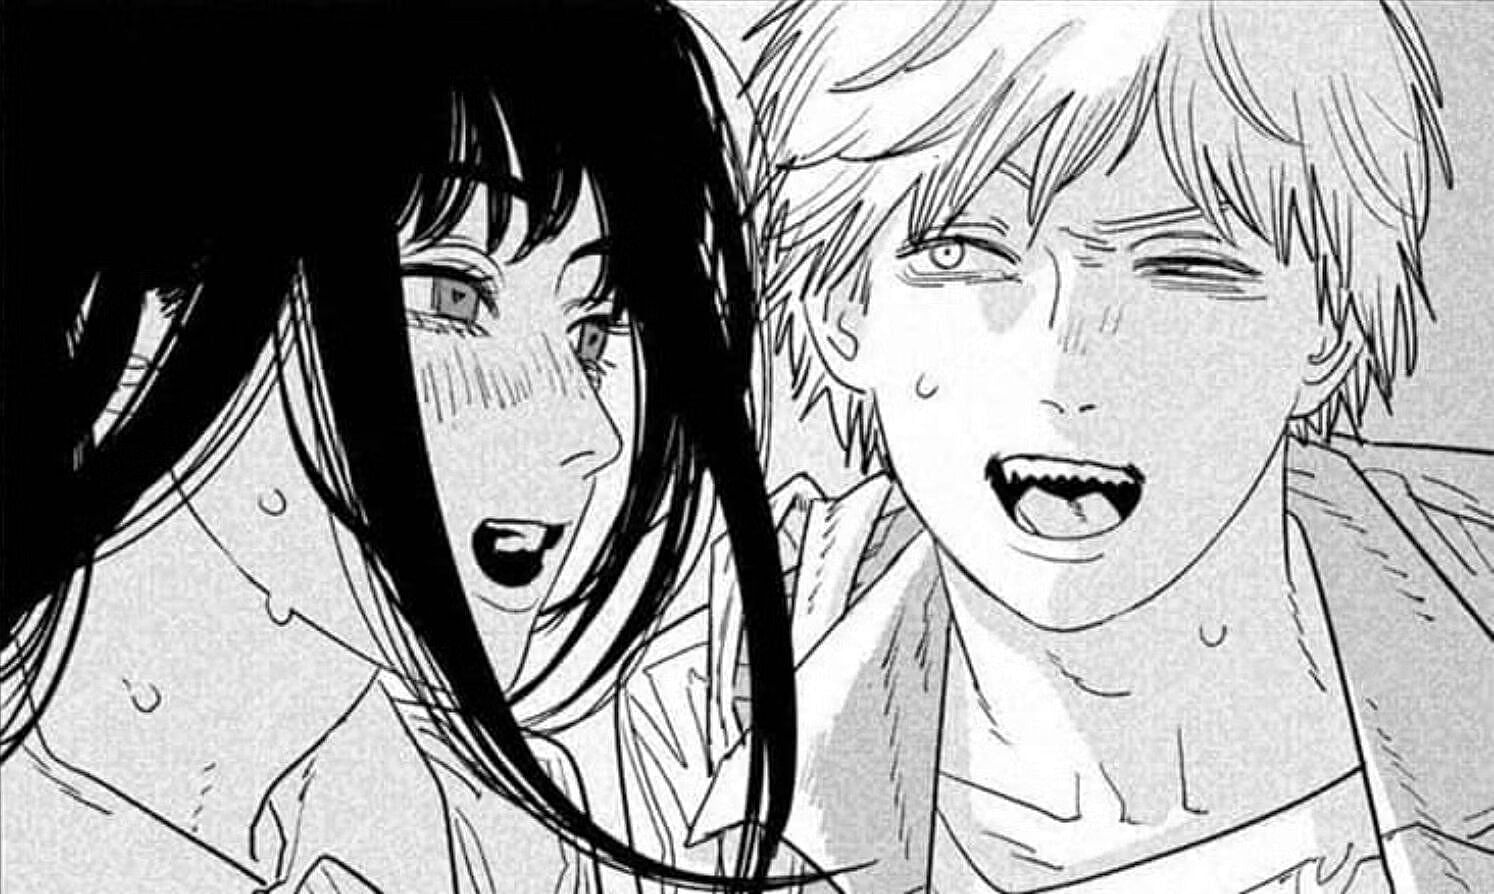 Asa and Denji in the manga (Image via Shueisha)